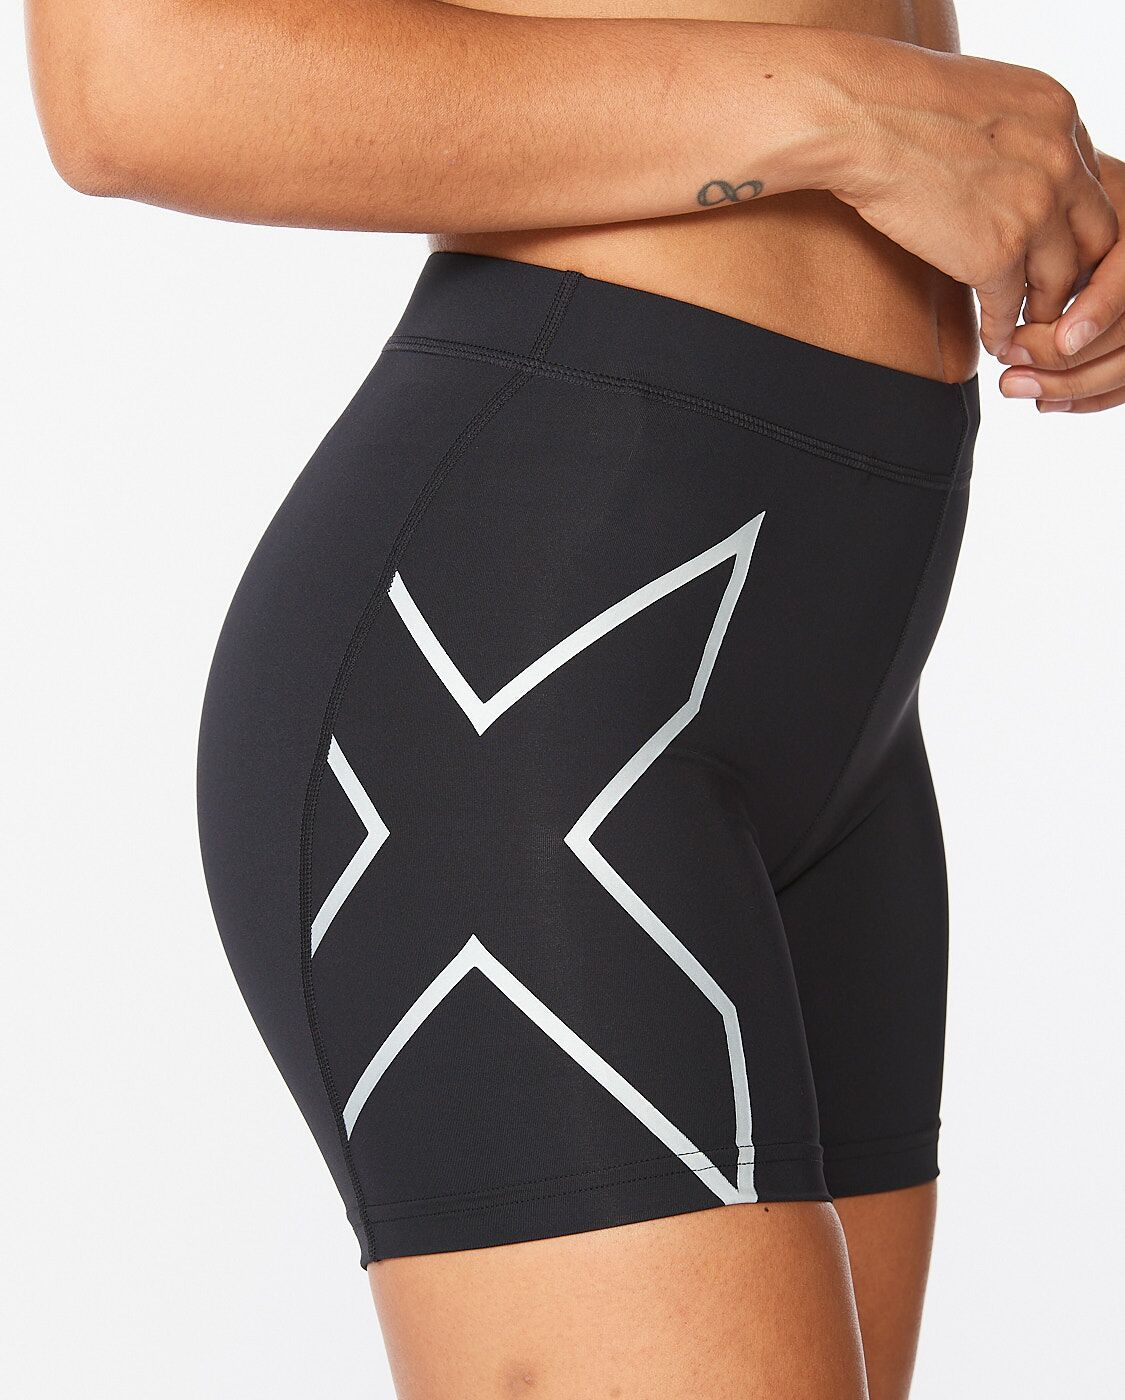 2XU SA - Women's Core Compression 5 Inch Shorts - Black/Silver